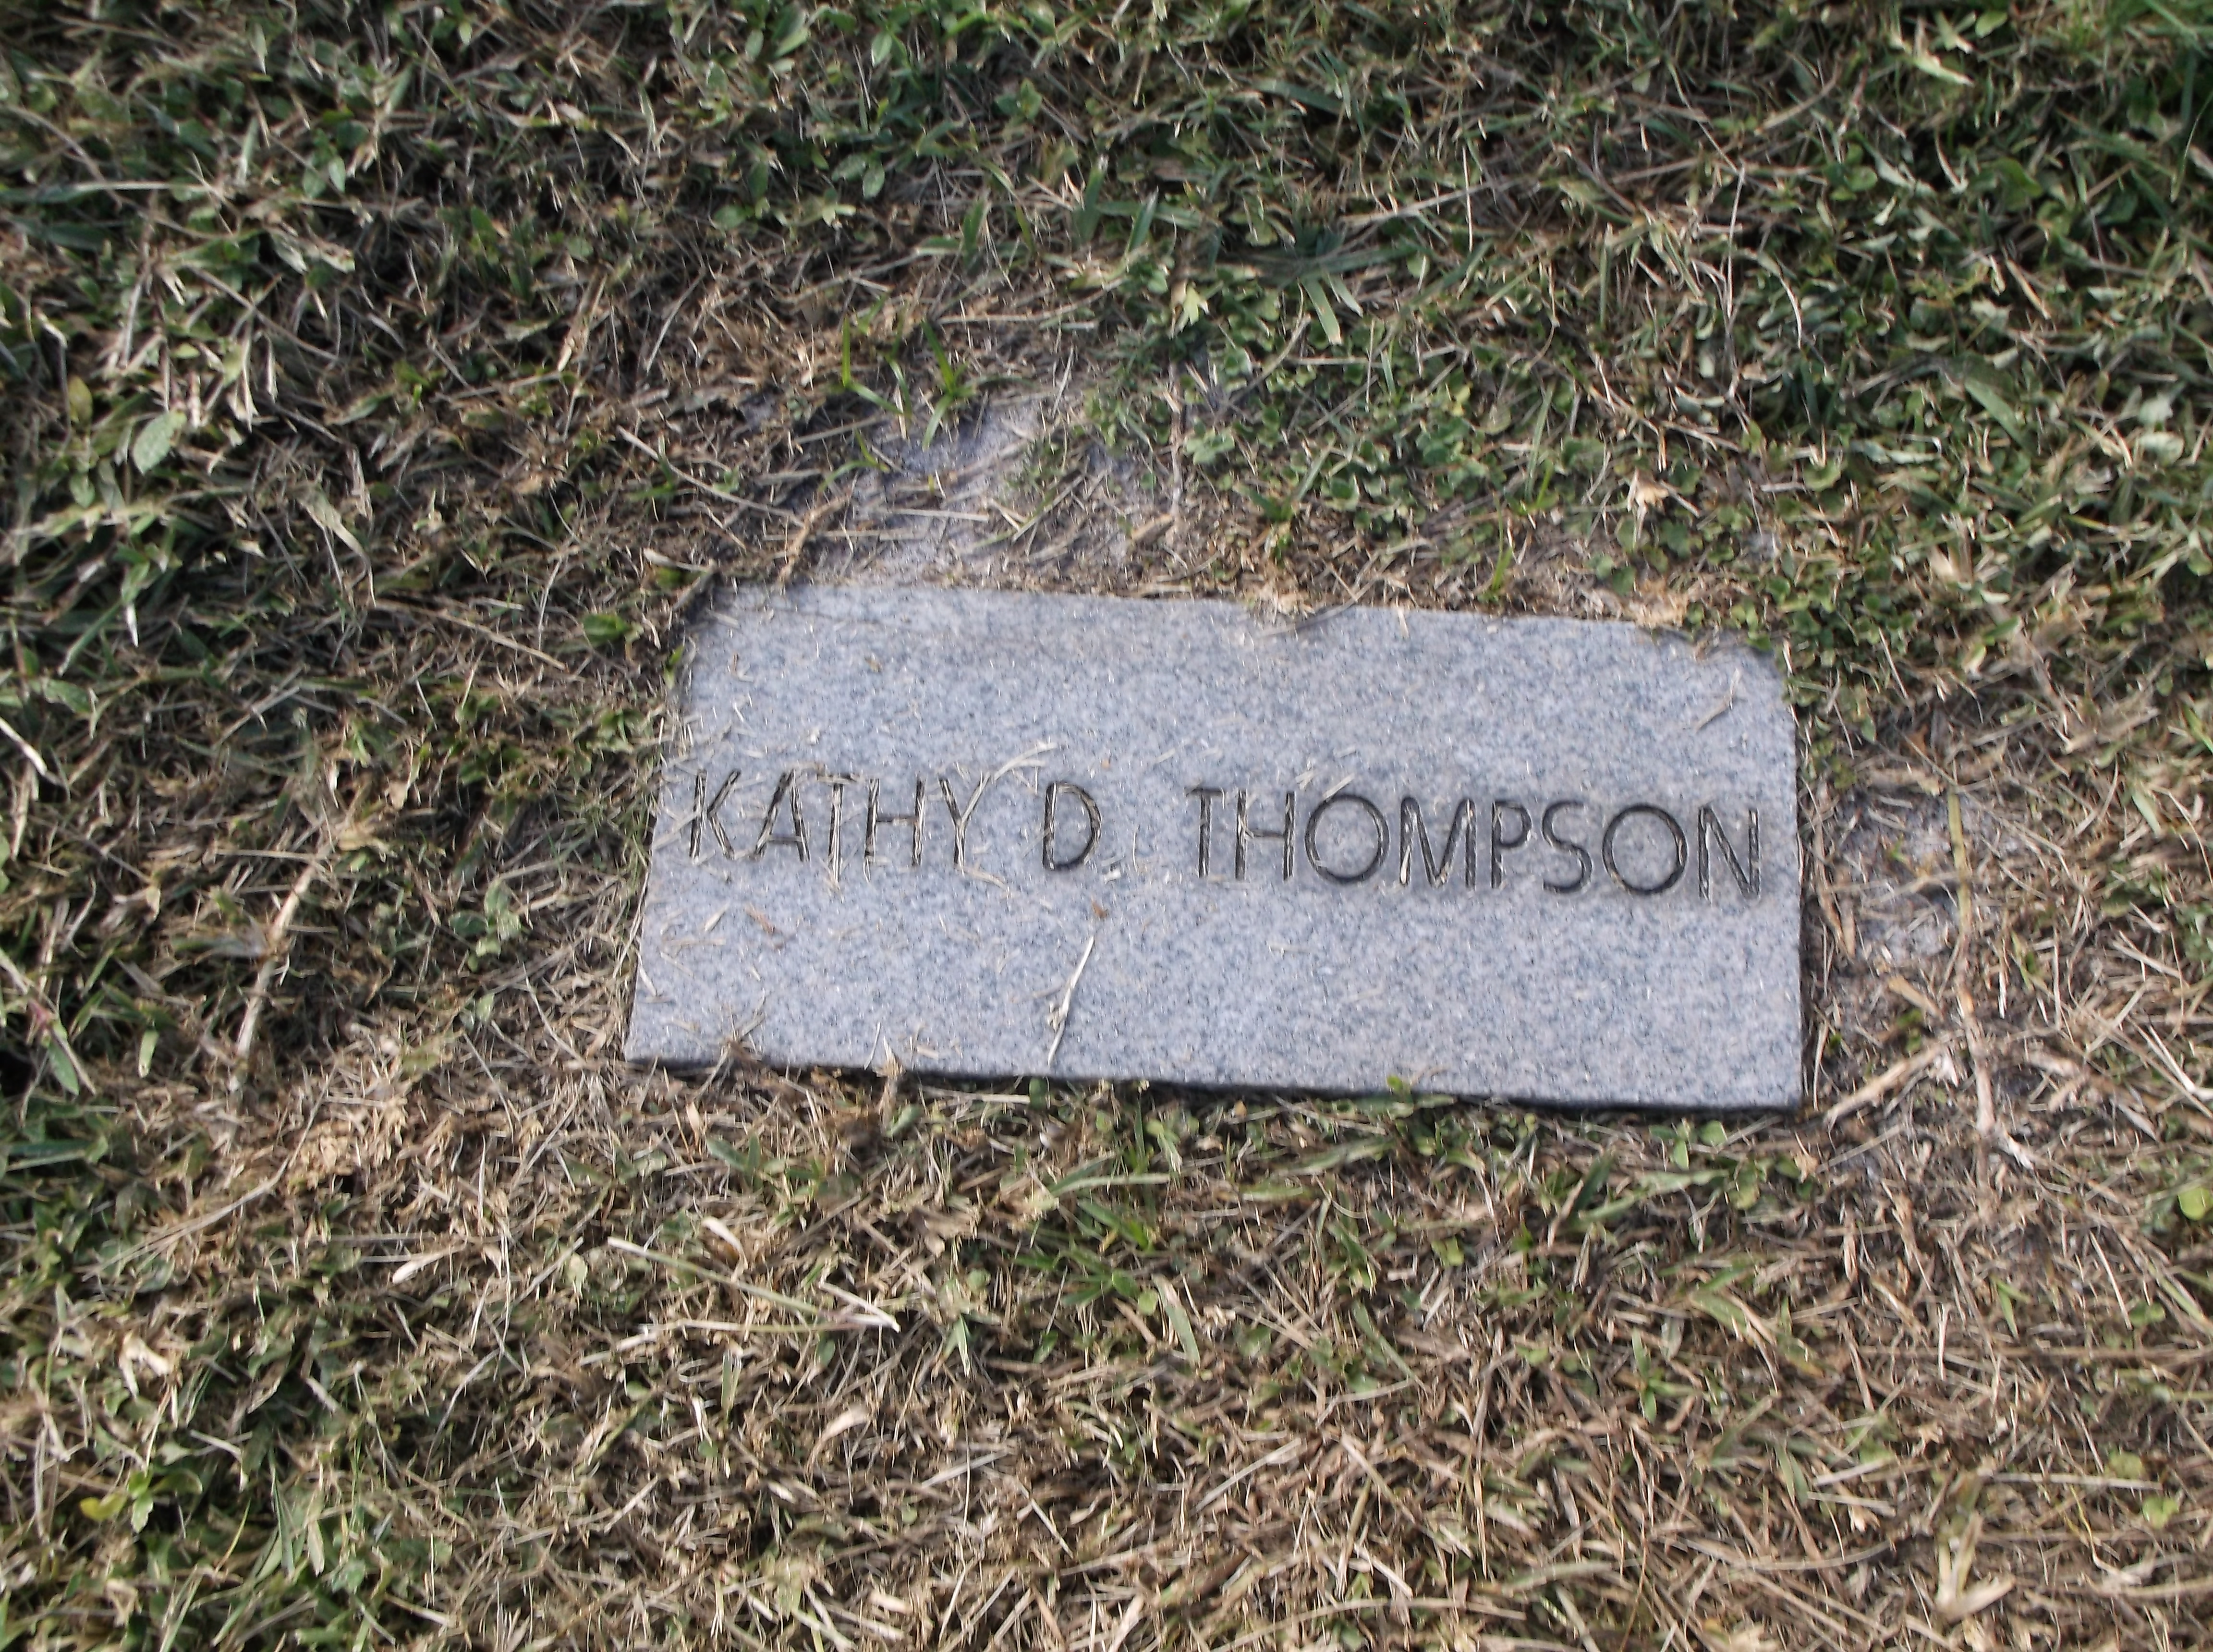 Kathy D Thompson